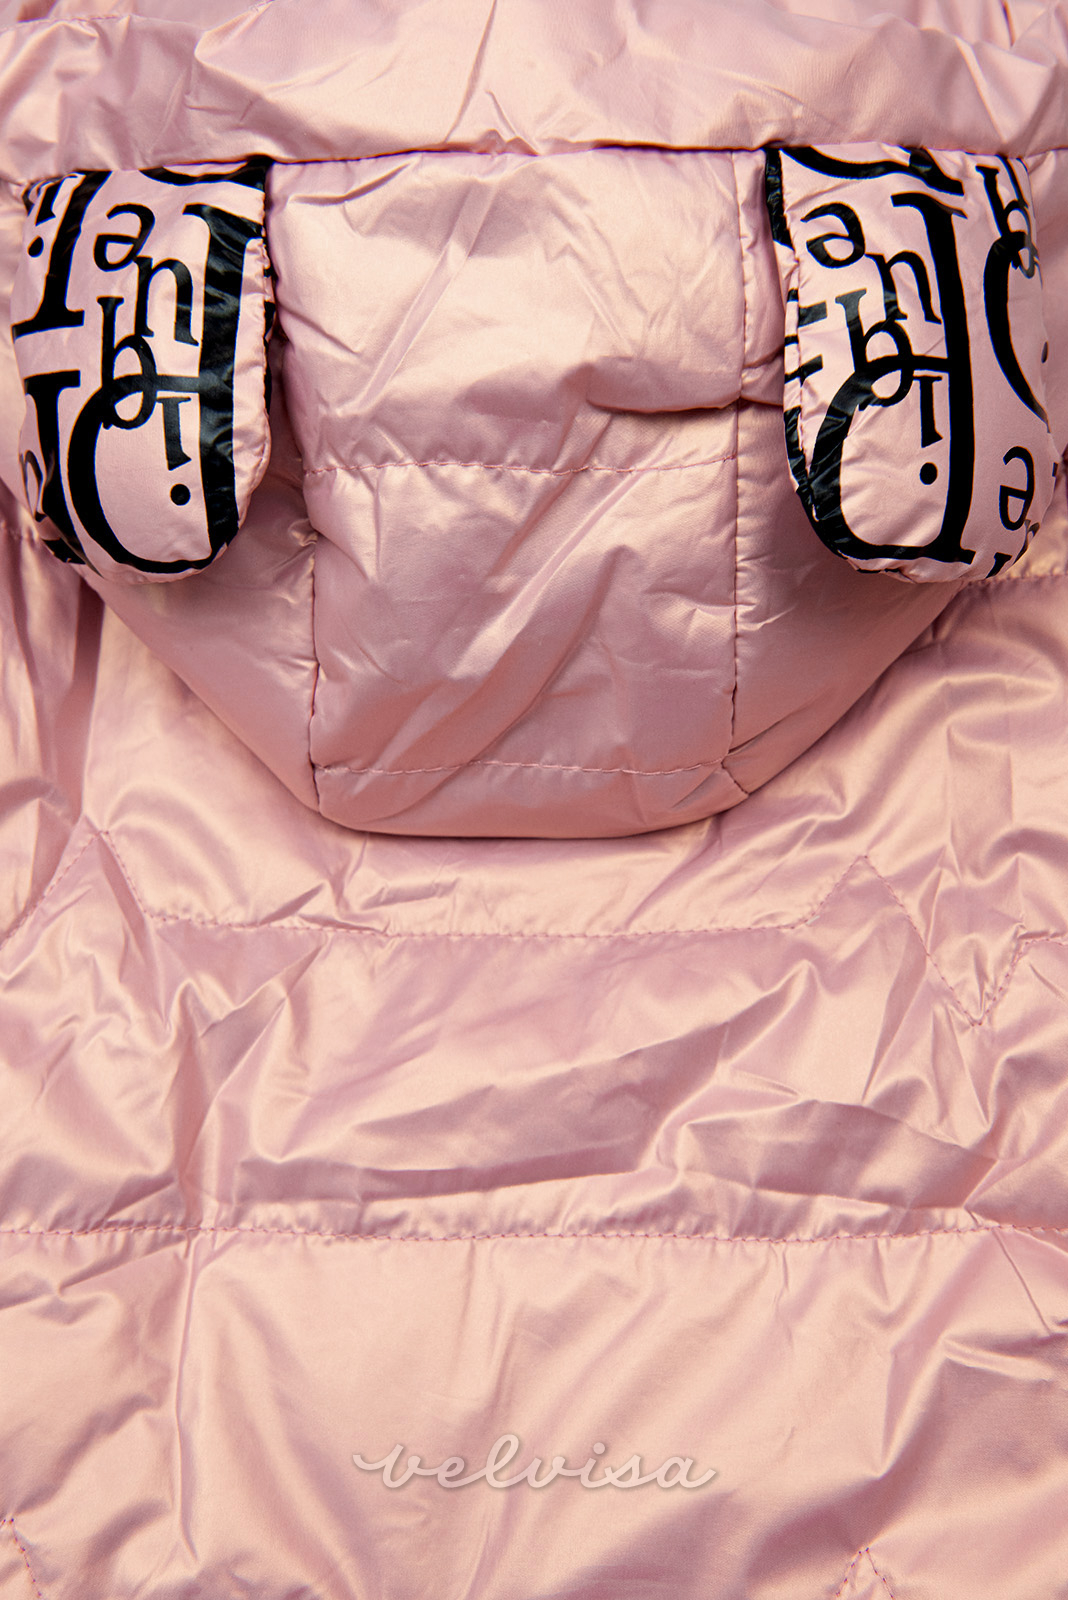 Bledo rožnata prešita jakna